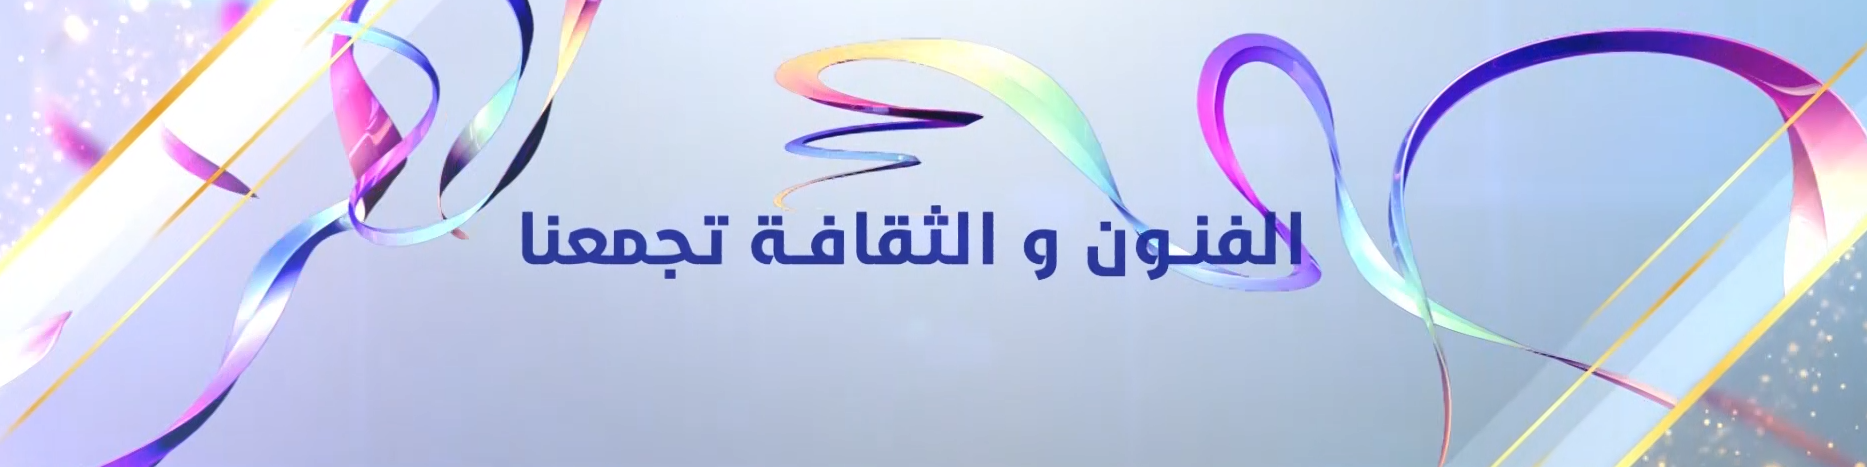 الومضة الإعلانية للدورة 23 للمهرجان العربي للإذاعة والتلفزيون  الحدث الإعلامي الفني التكنولوجي العربي المنتظر قريبا في تونس